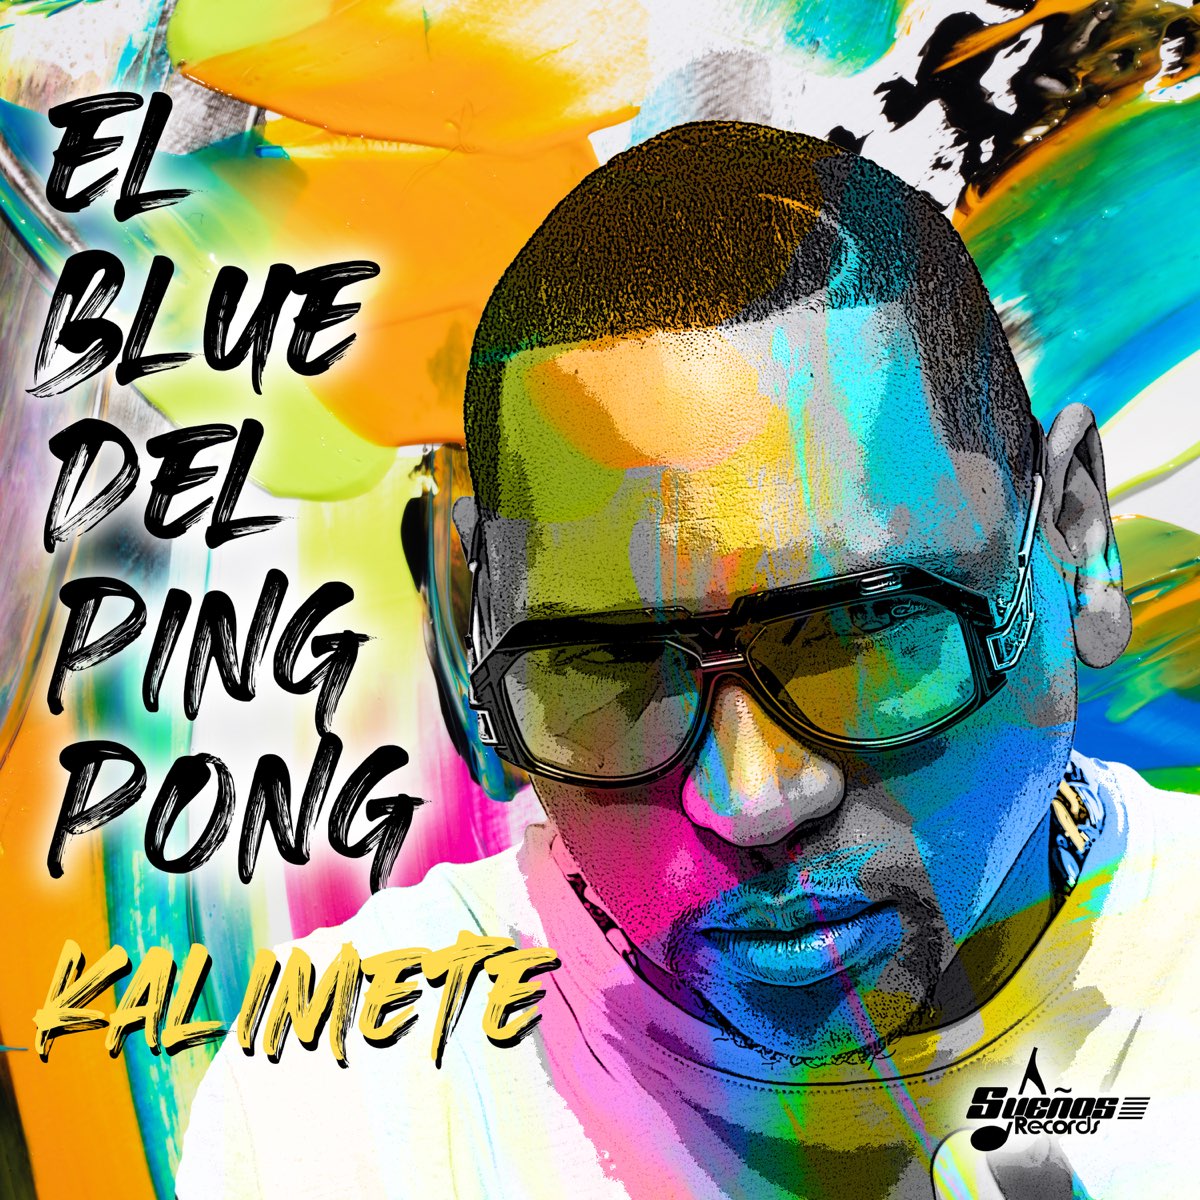 El Blue Del Ping Pong - Single par Kalimete sur Apple Music